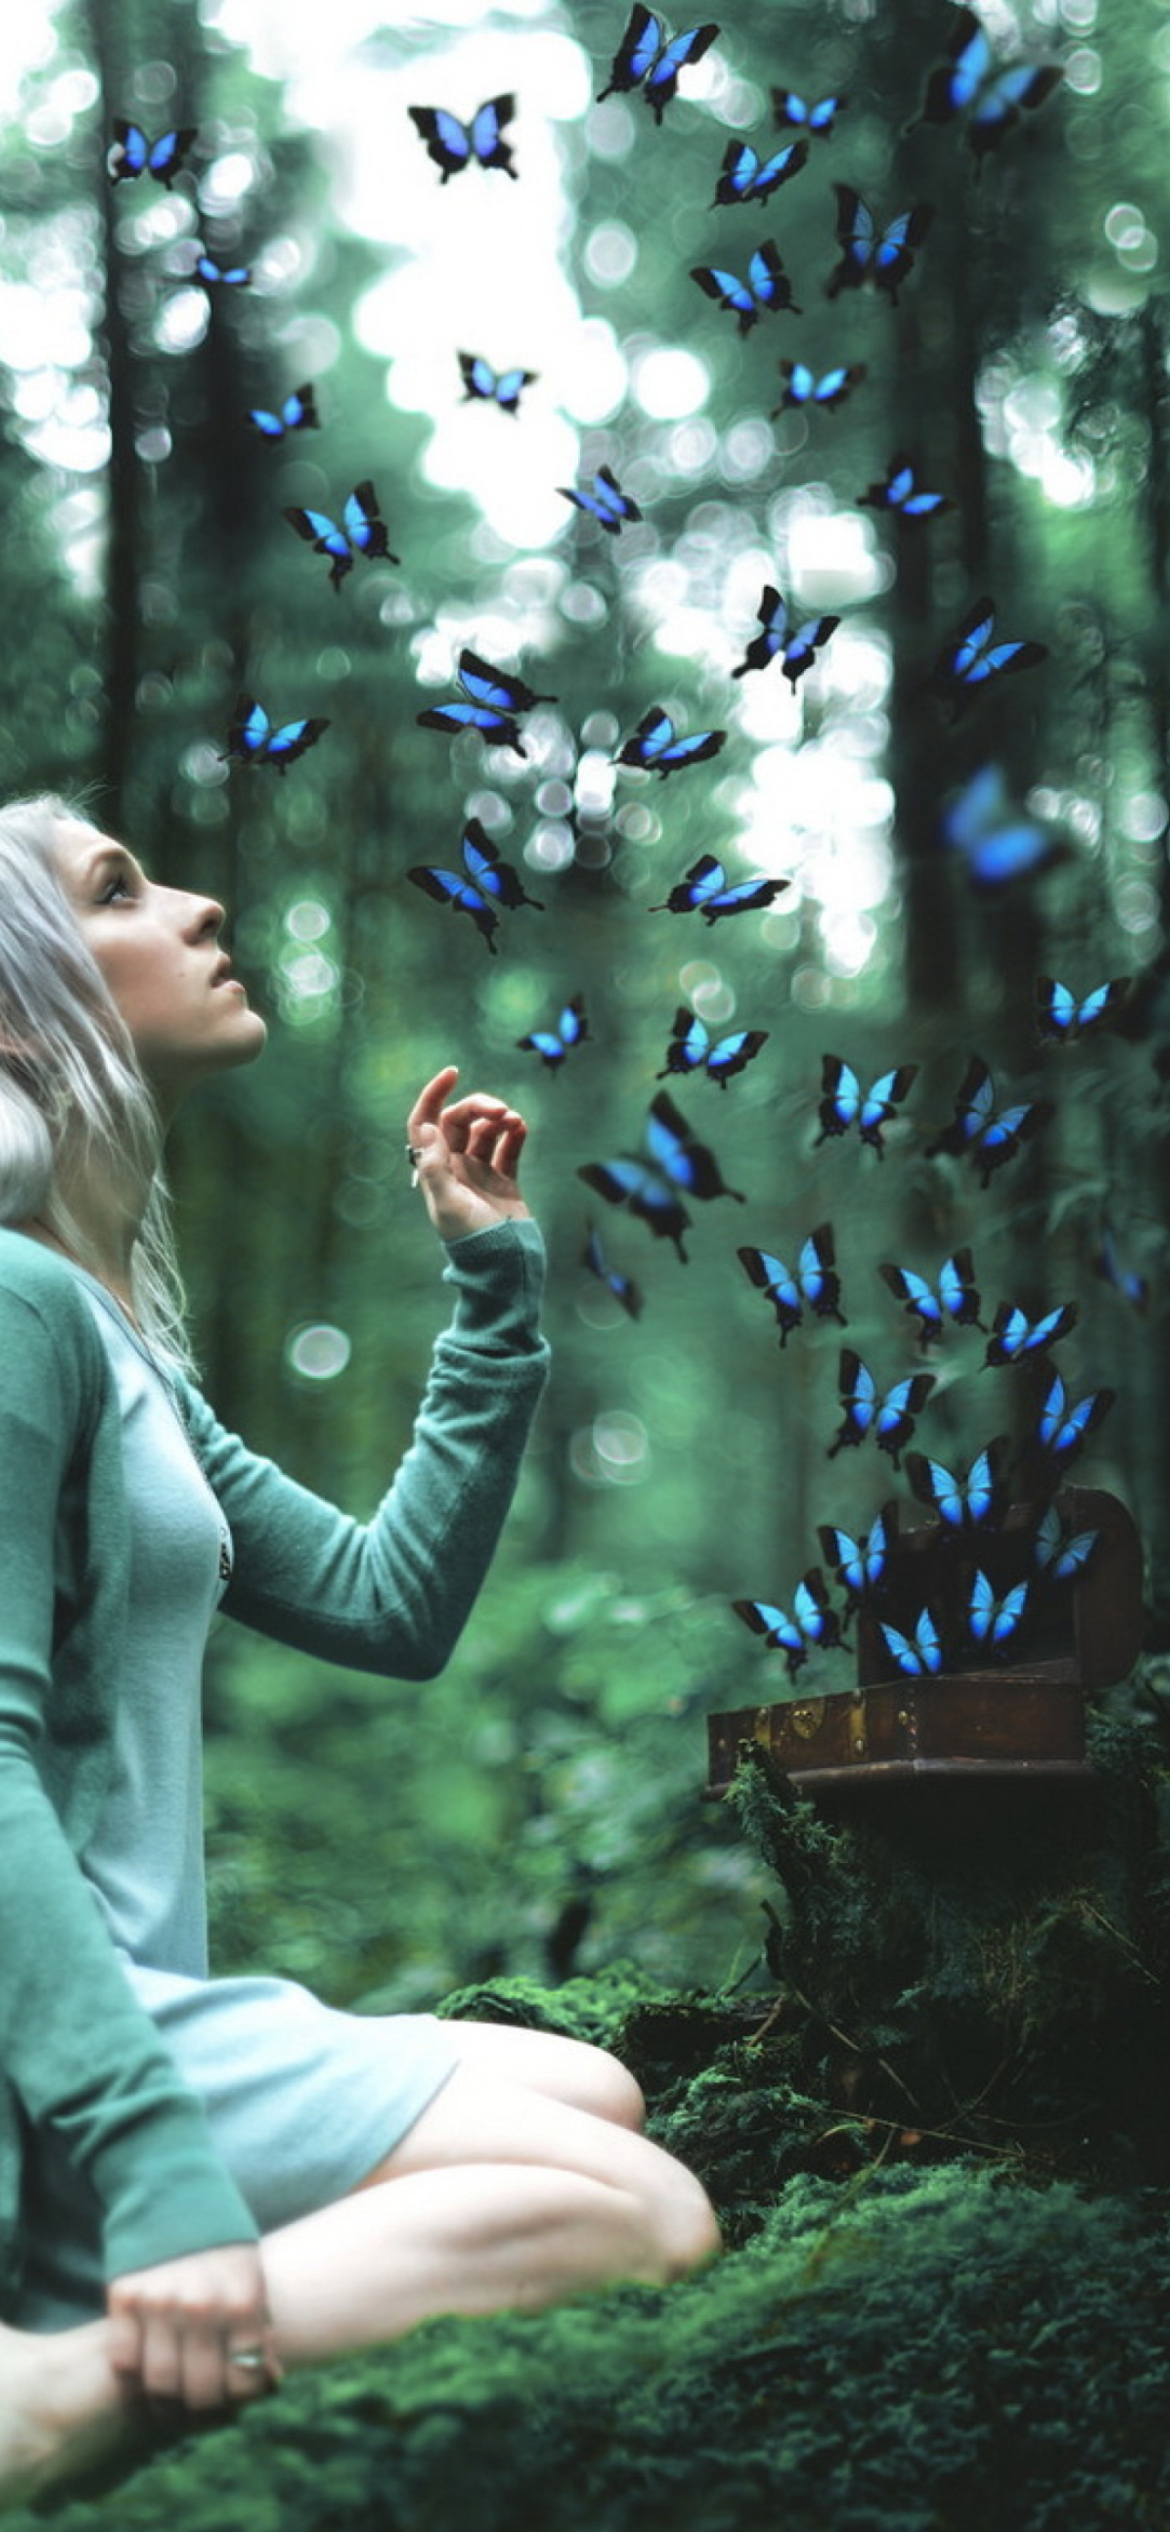 Girl And Blue Butterflies screenshot #1 1170x2532